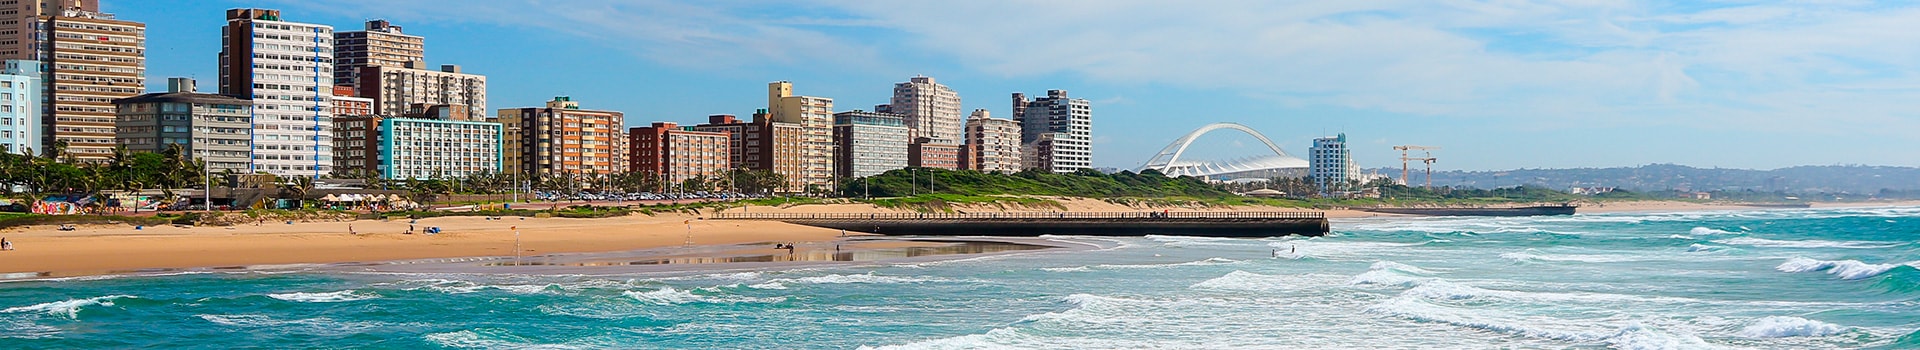 Cape town - Durban